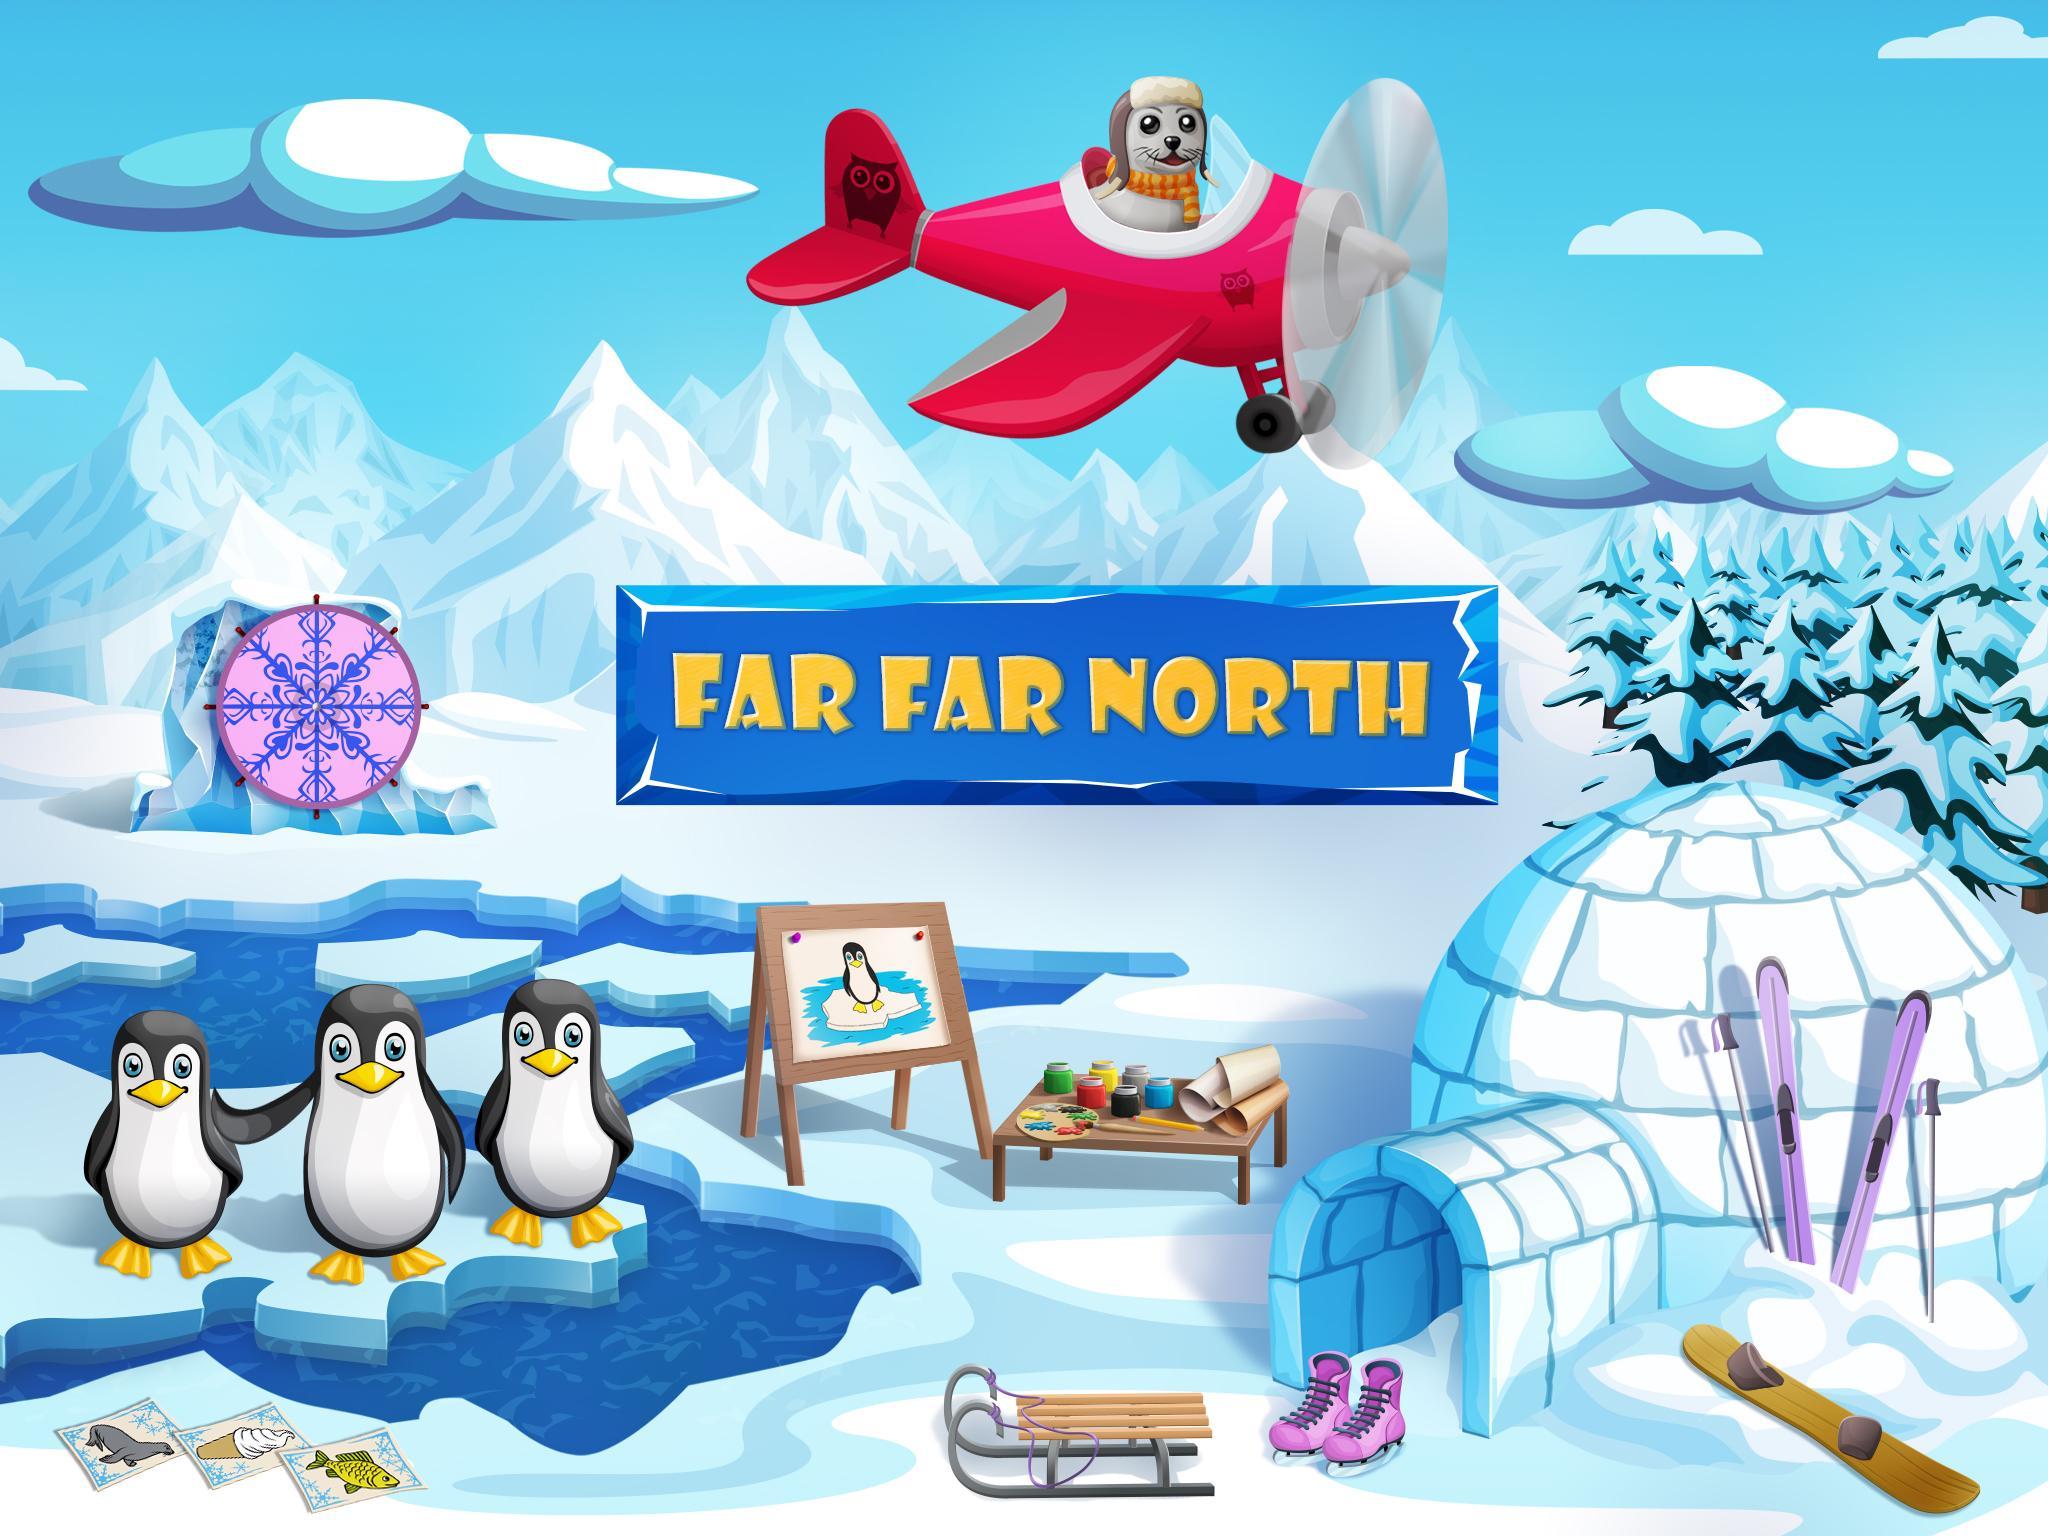 Farthest north. Far North. Игра головоломка про пингвинов и рыб на Северном полюсе. Far North вода.